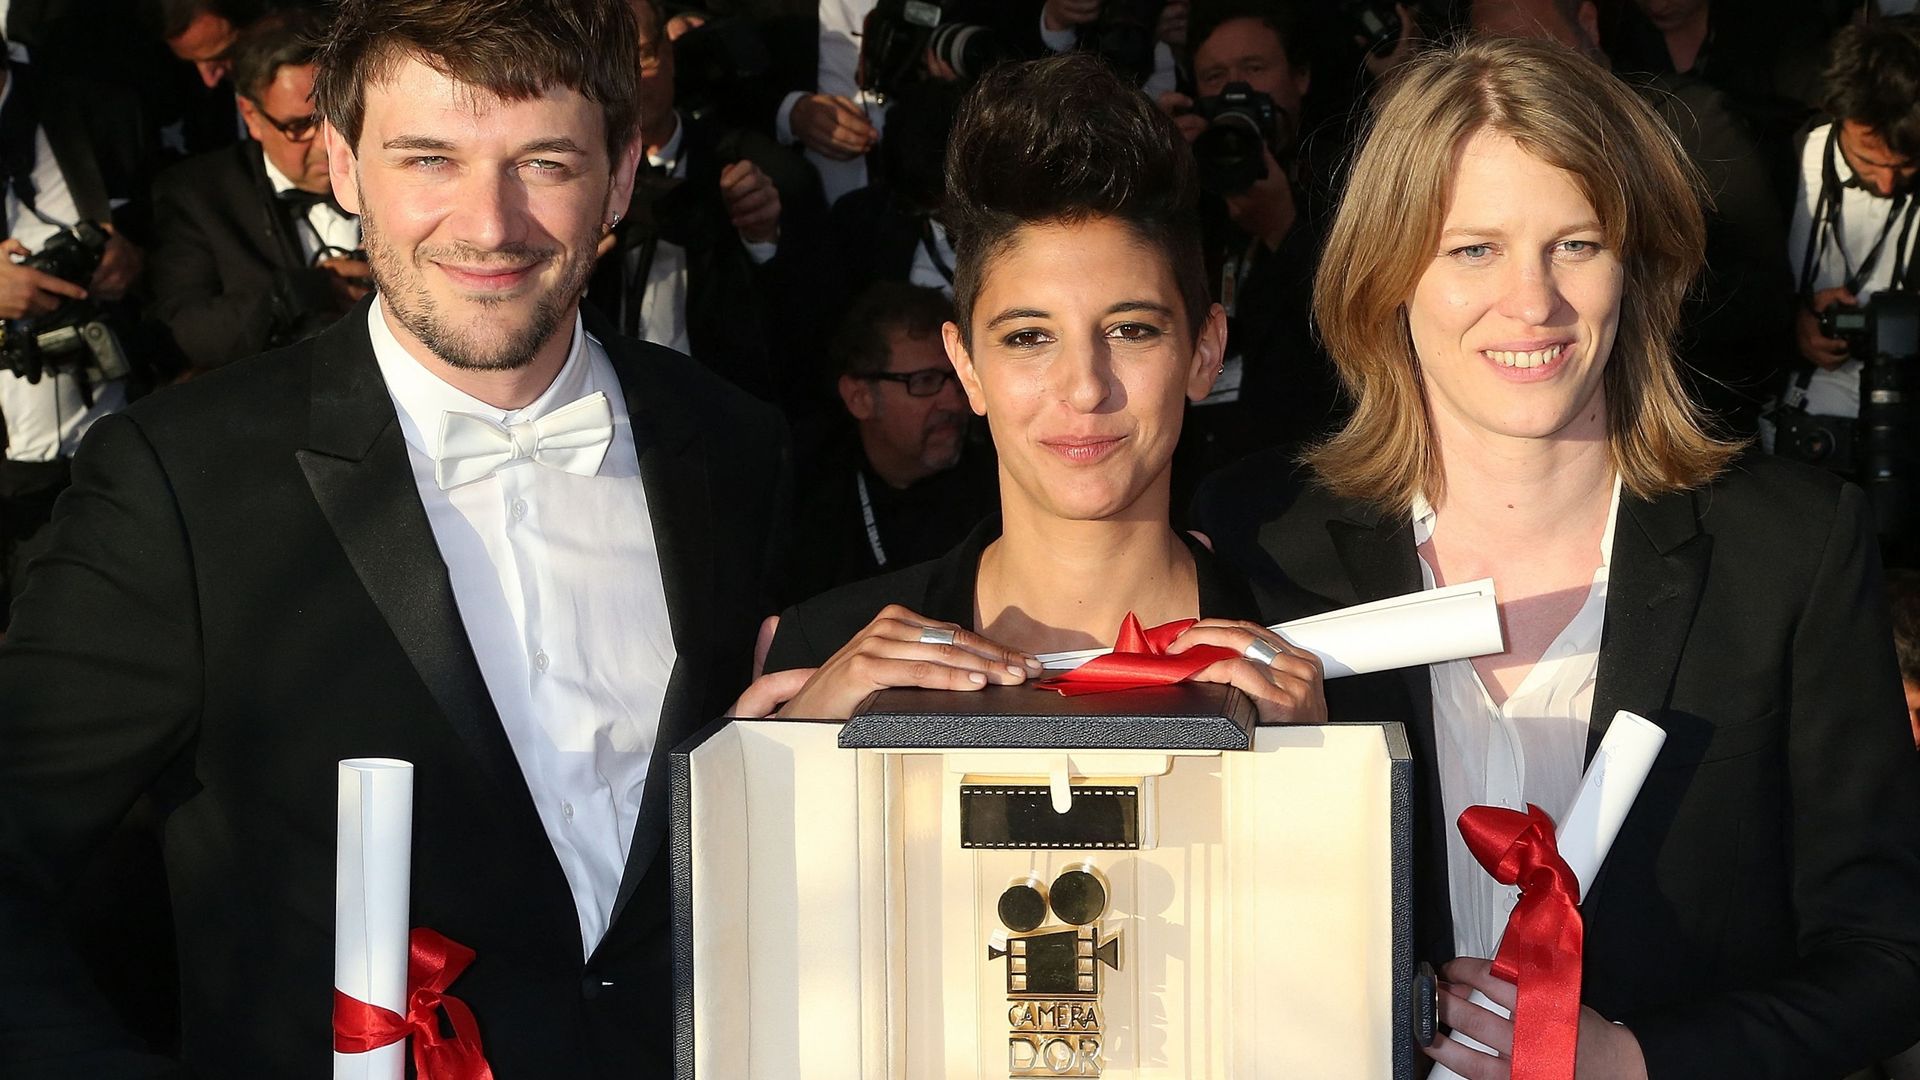 Les coréalisateurs français Samuel Theis, Marie Amachoukeli et Claire Burger posent avec le prix de la Caméra d’Or pour le film "Party Girl" lors d’un photocall après la cérémonie de clôture de la 67e édition du Festival de Cannes.